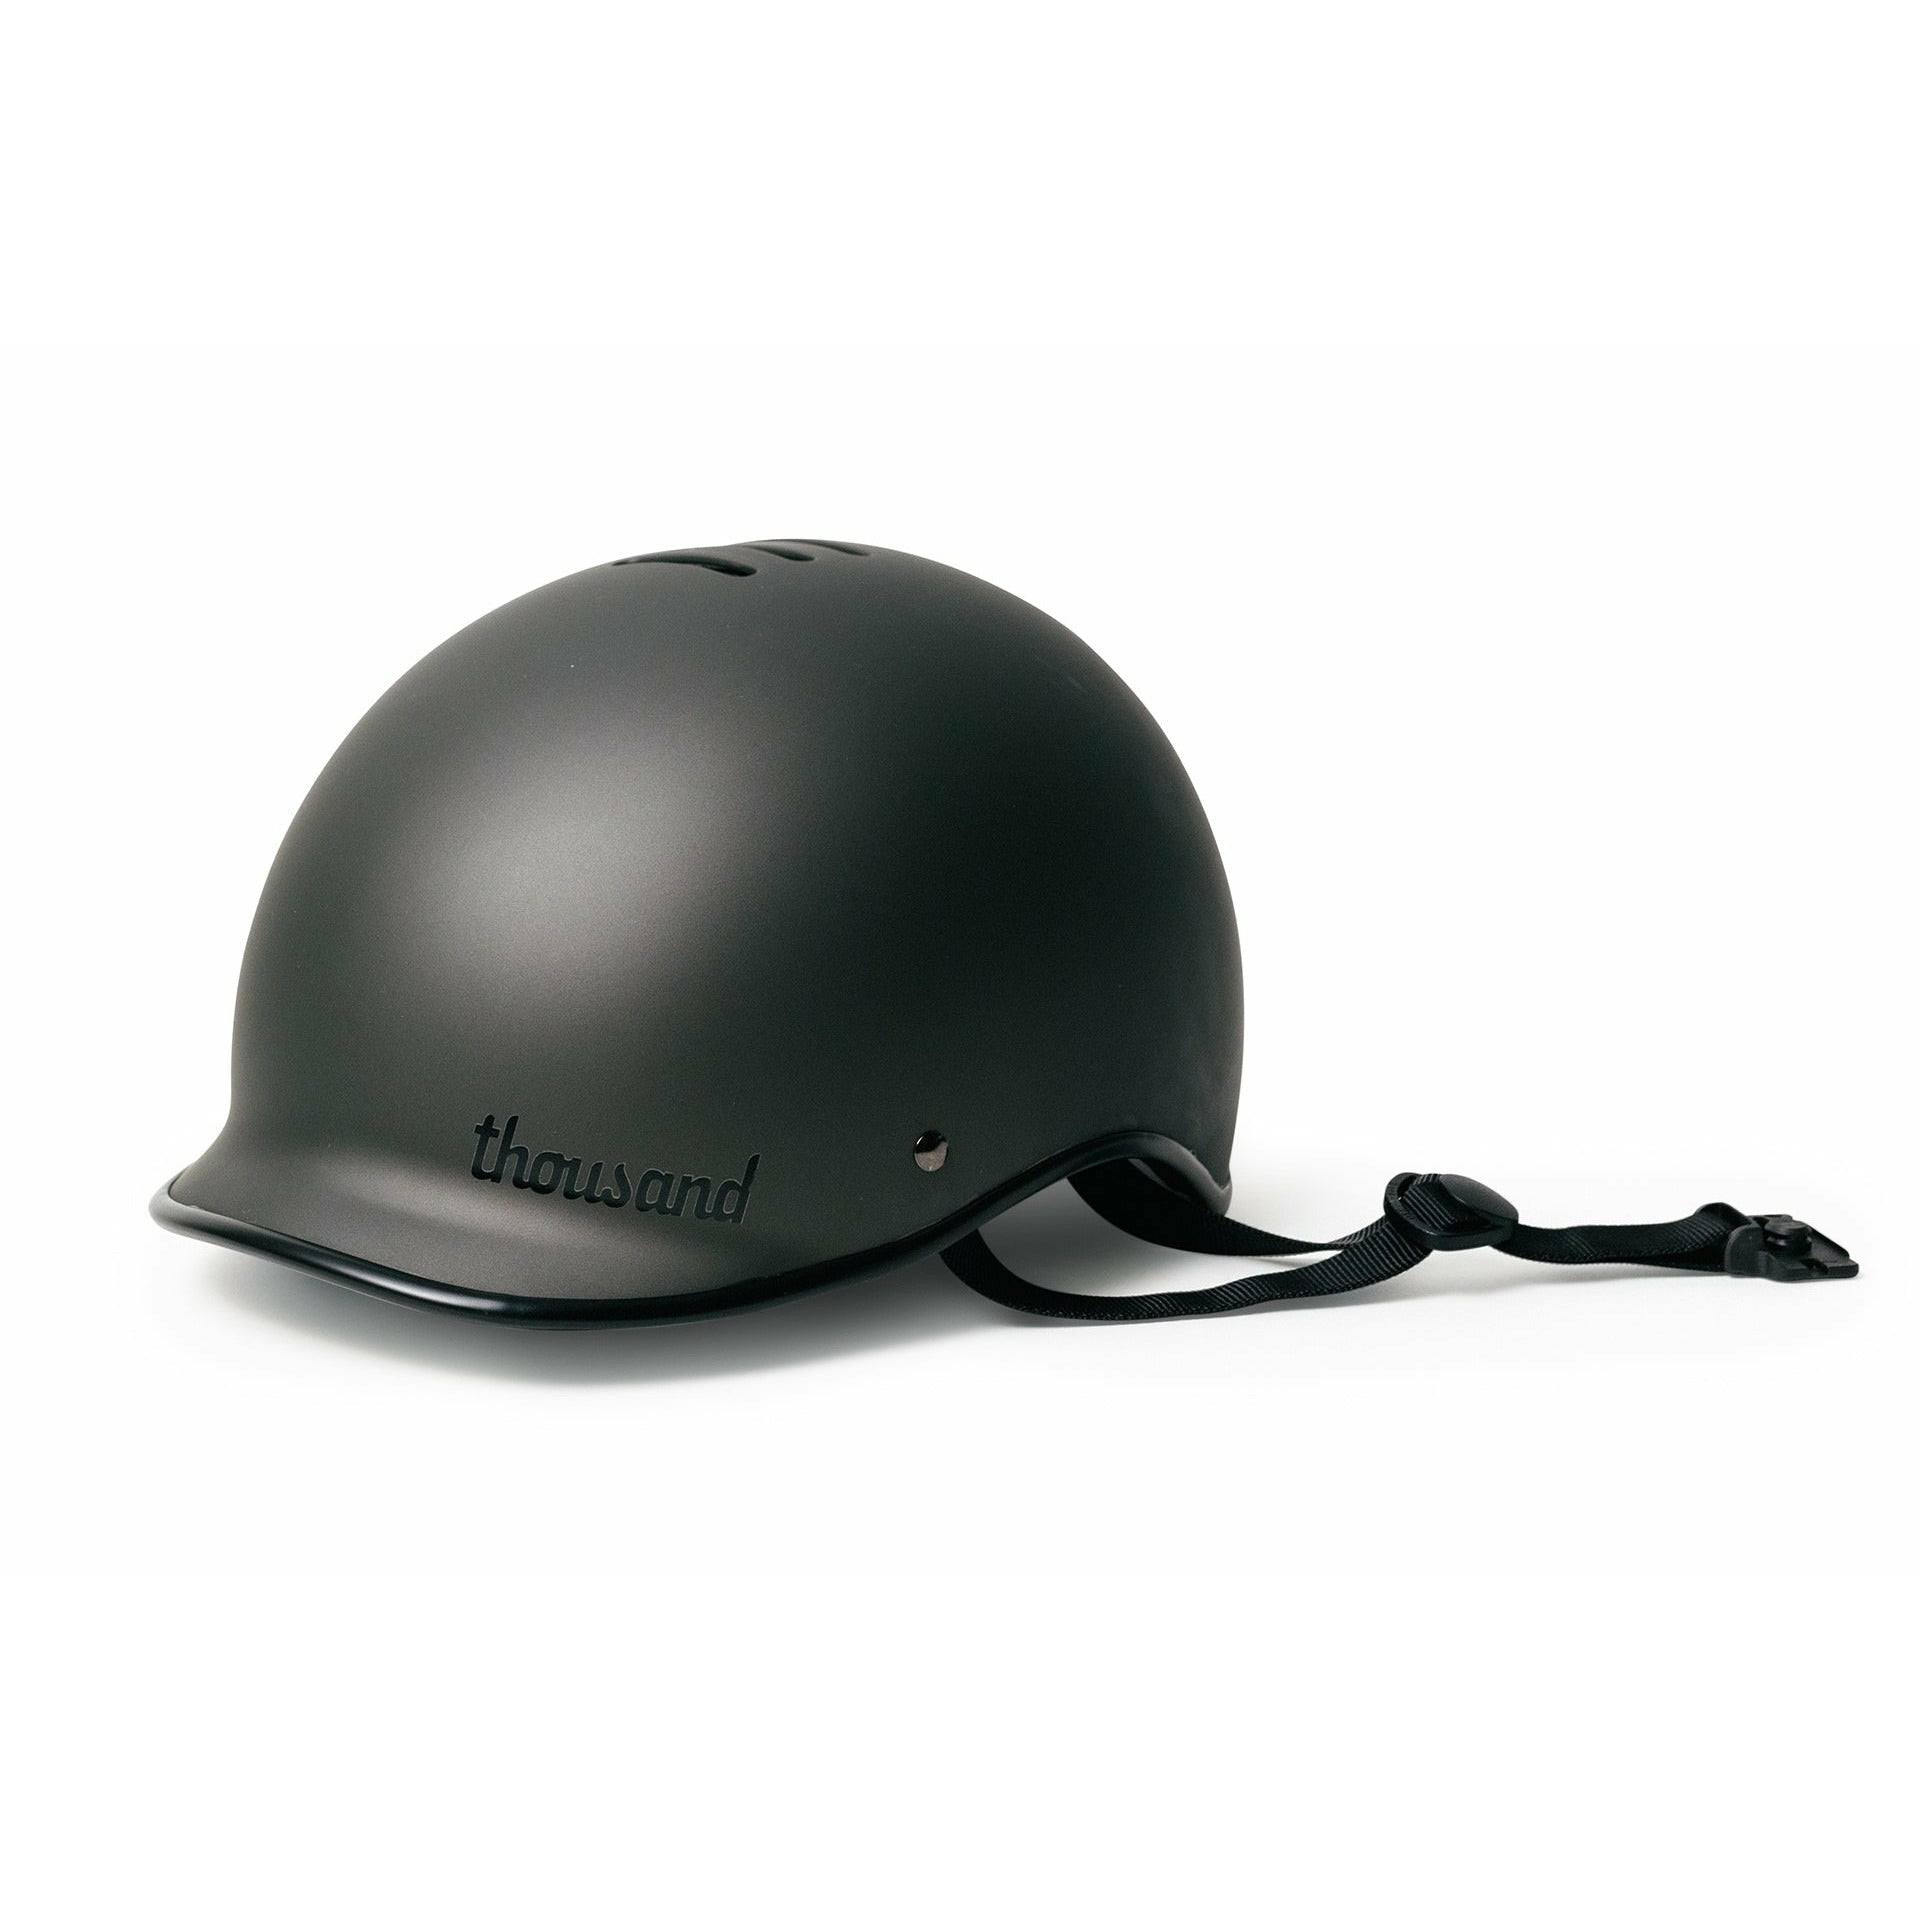 Thousand Heritage Helmet - Stealth Black - Medium